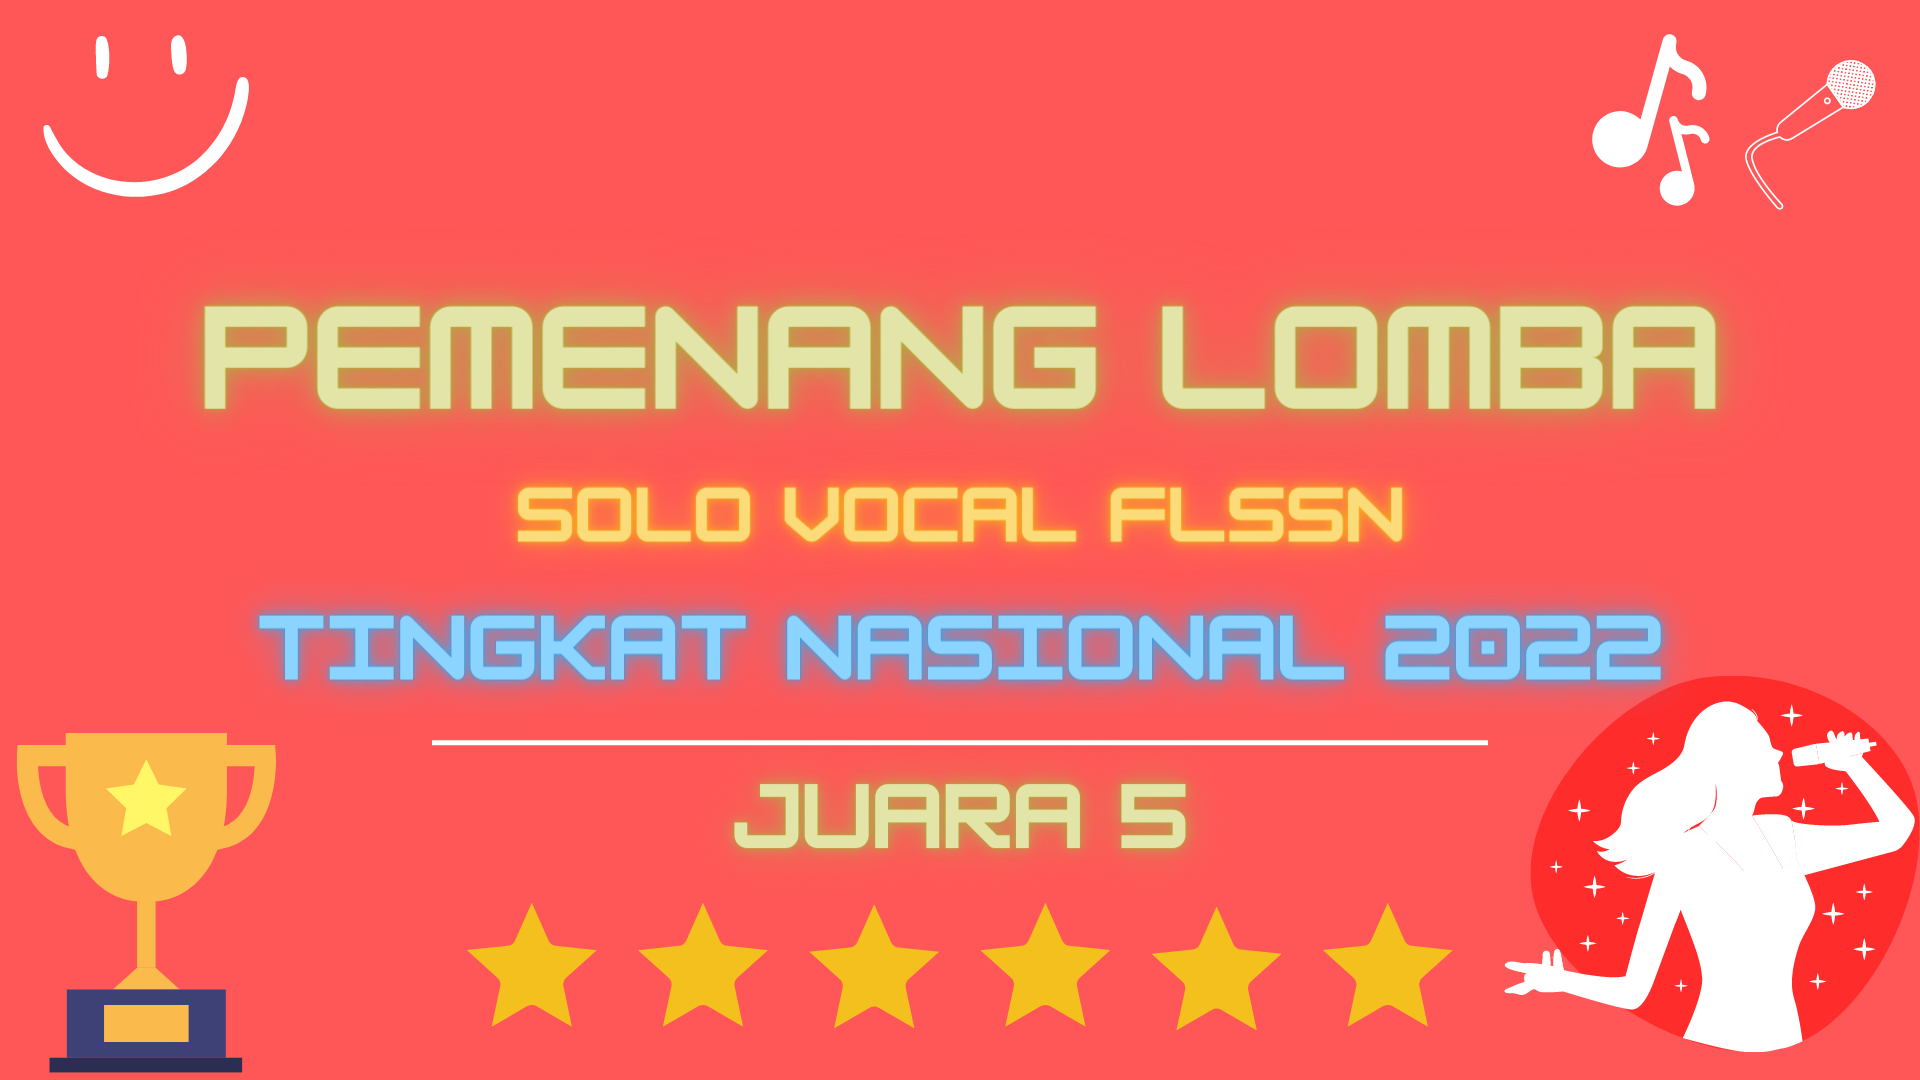 2022 | Juara 5 FLSSN Solo Vocal Tingkat Nasional